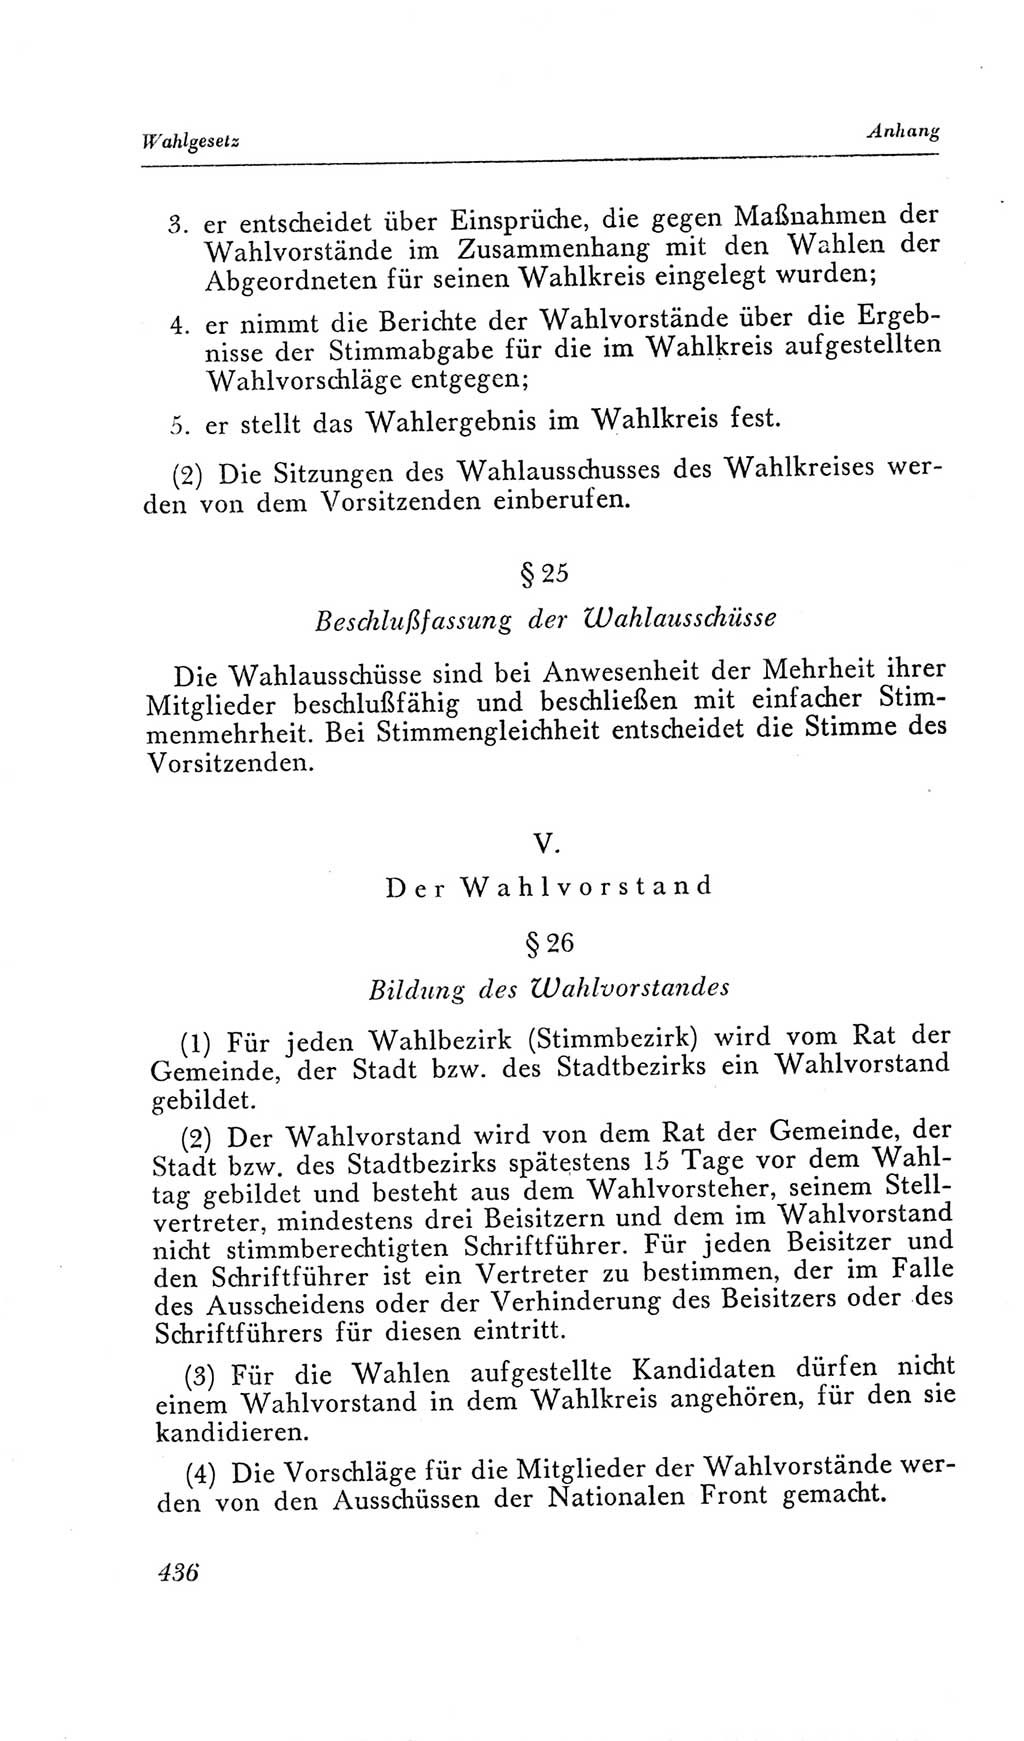 Handbuch der Volkskammer (VK) der Deutschen Demokratischen Republik (DDR), 2. Wahlperiode 1954-1958, Seite 436 (Hdb. VK. DDR, 2. WP. 1954-1958, S. 436)